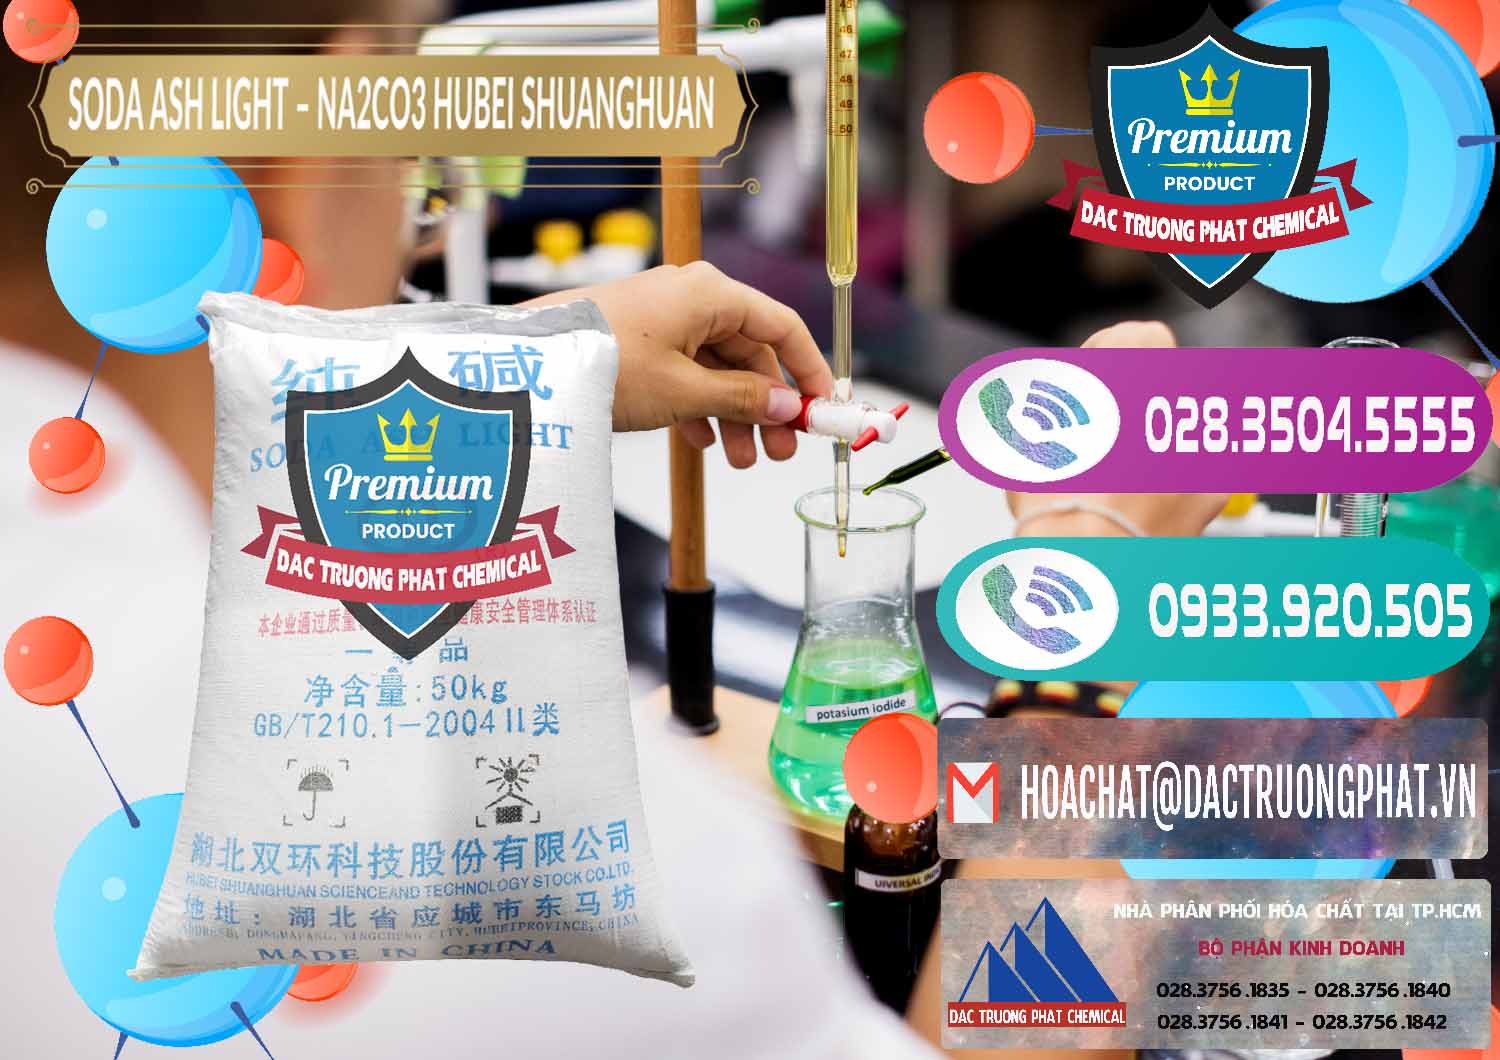 Cty chuyên nhập khẩu và bán Soda Ash Light - NA2CO3 2 Vòng Tròn Hubei Shuanghuan Trung Quốc China - 0130 - Nơi chuyên kinh doanh _ cung cấp hóa chất tại TP.HCM - hoachatxulynuoc.com